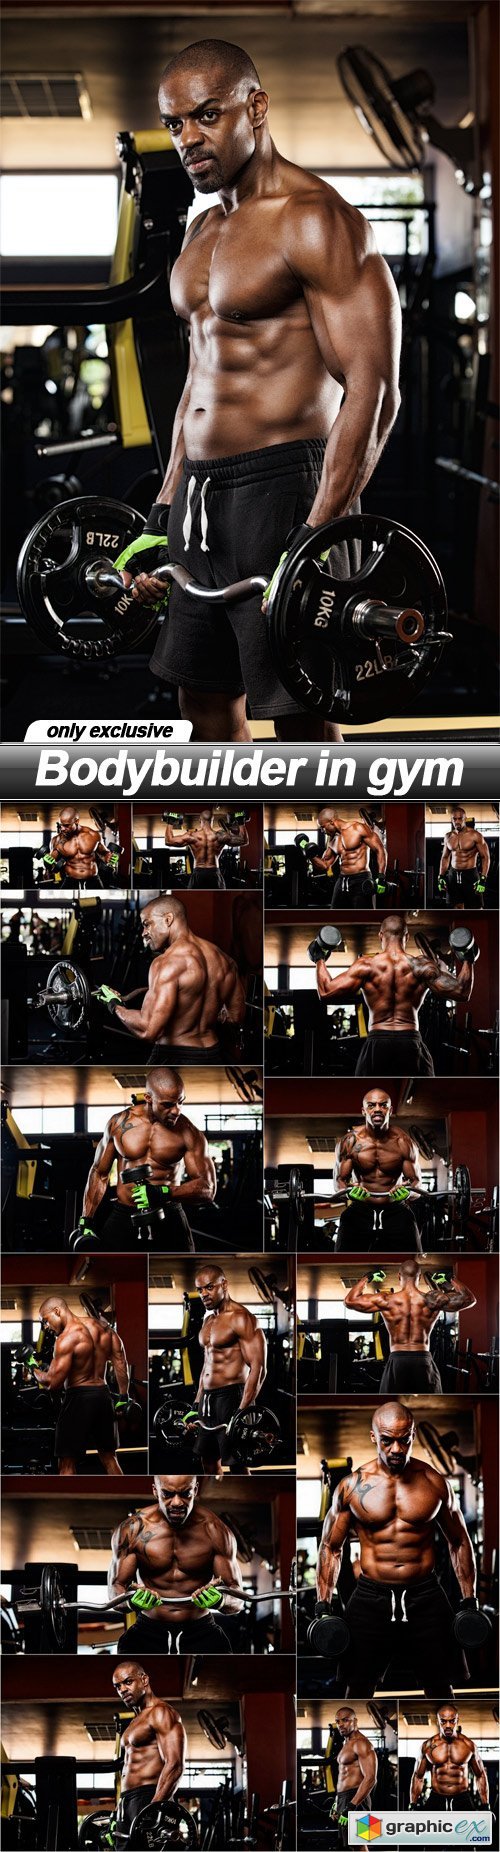 Bodybuilder in gym - 16 UHQ JPEG